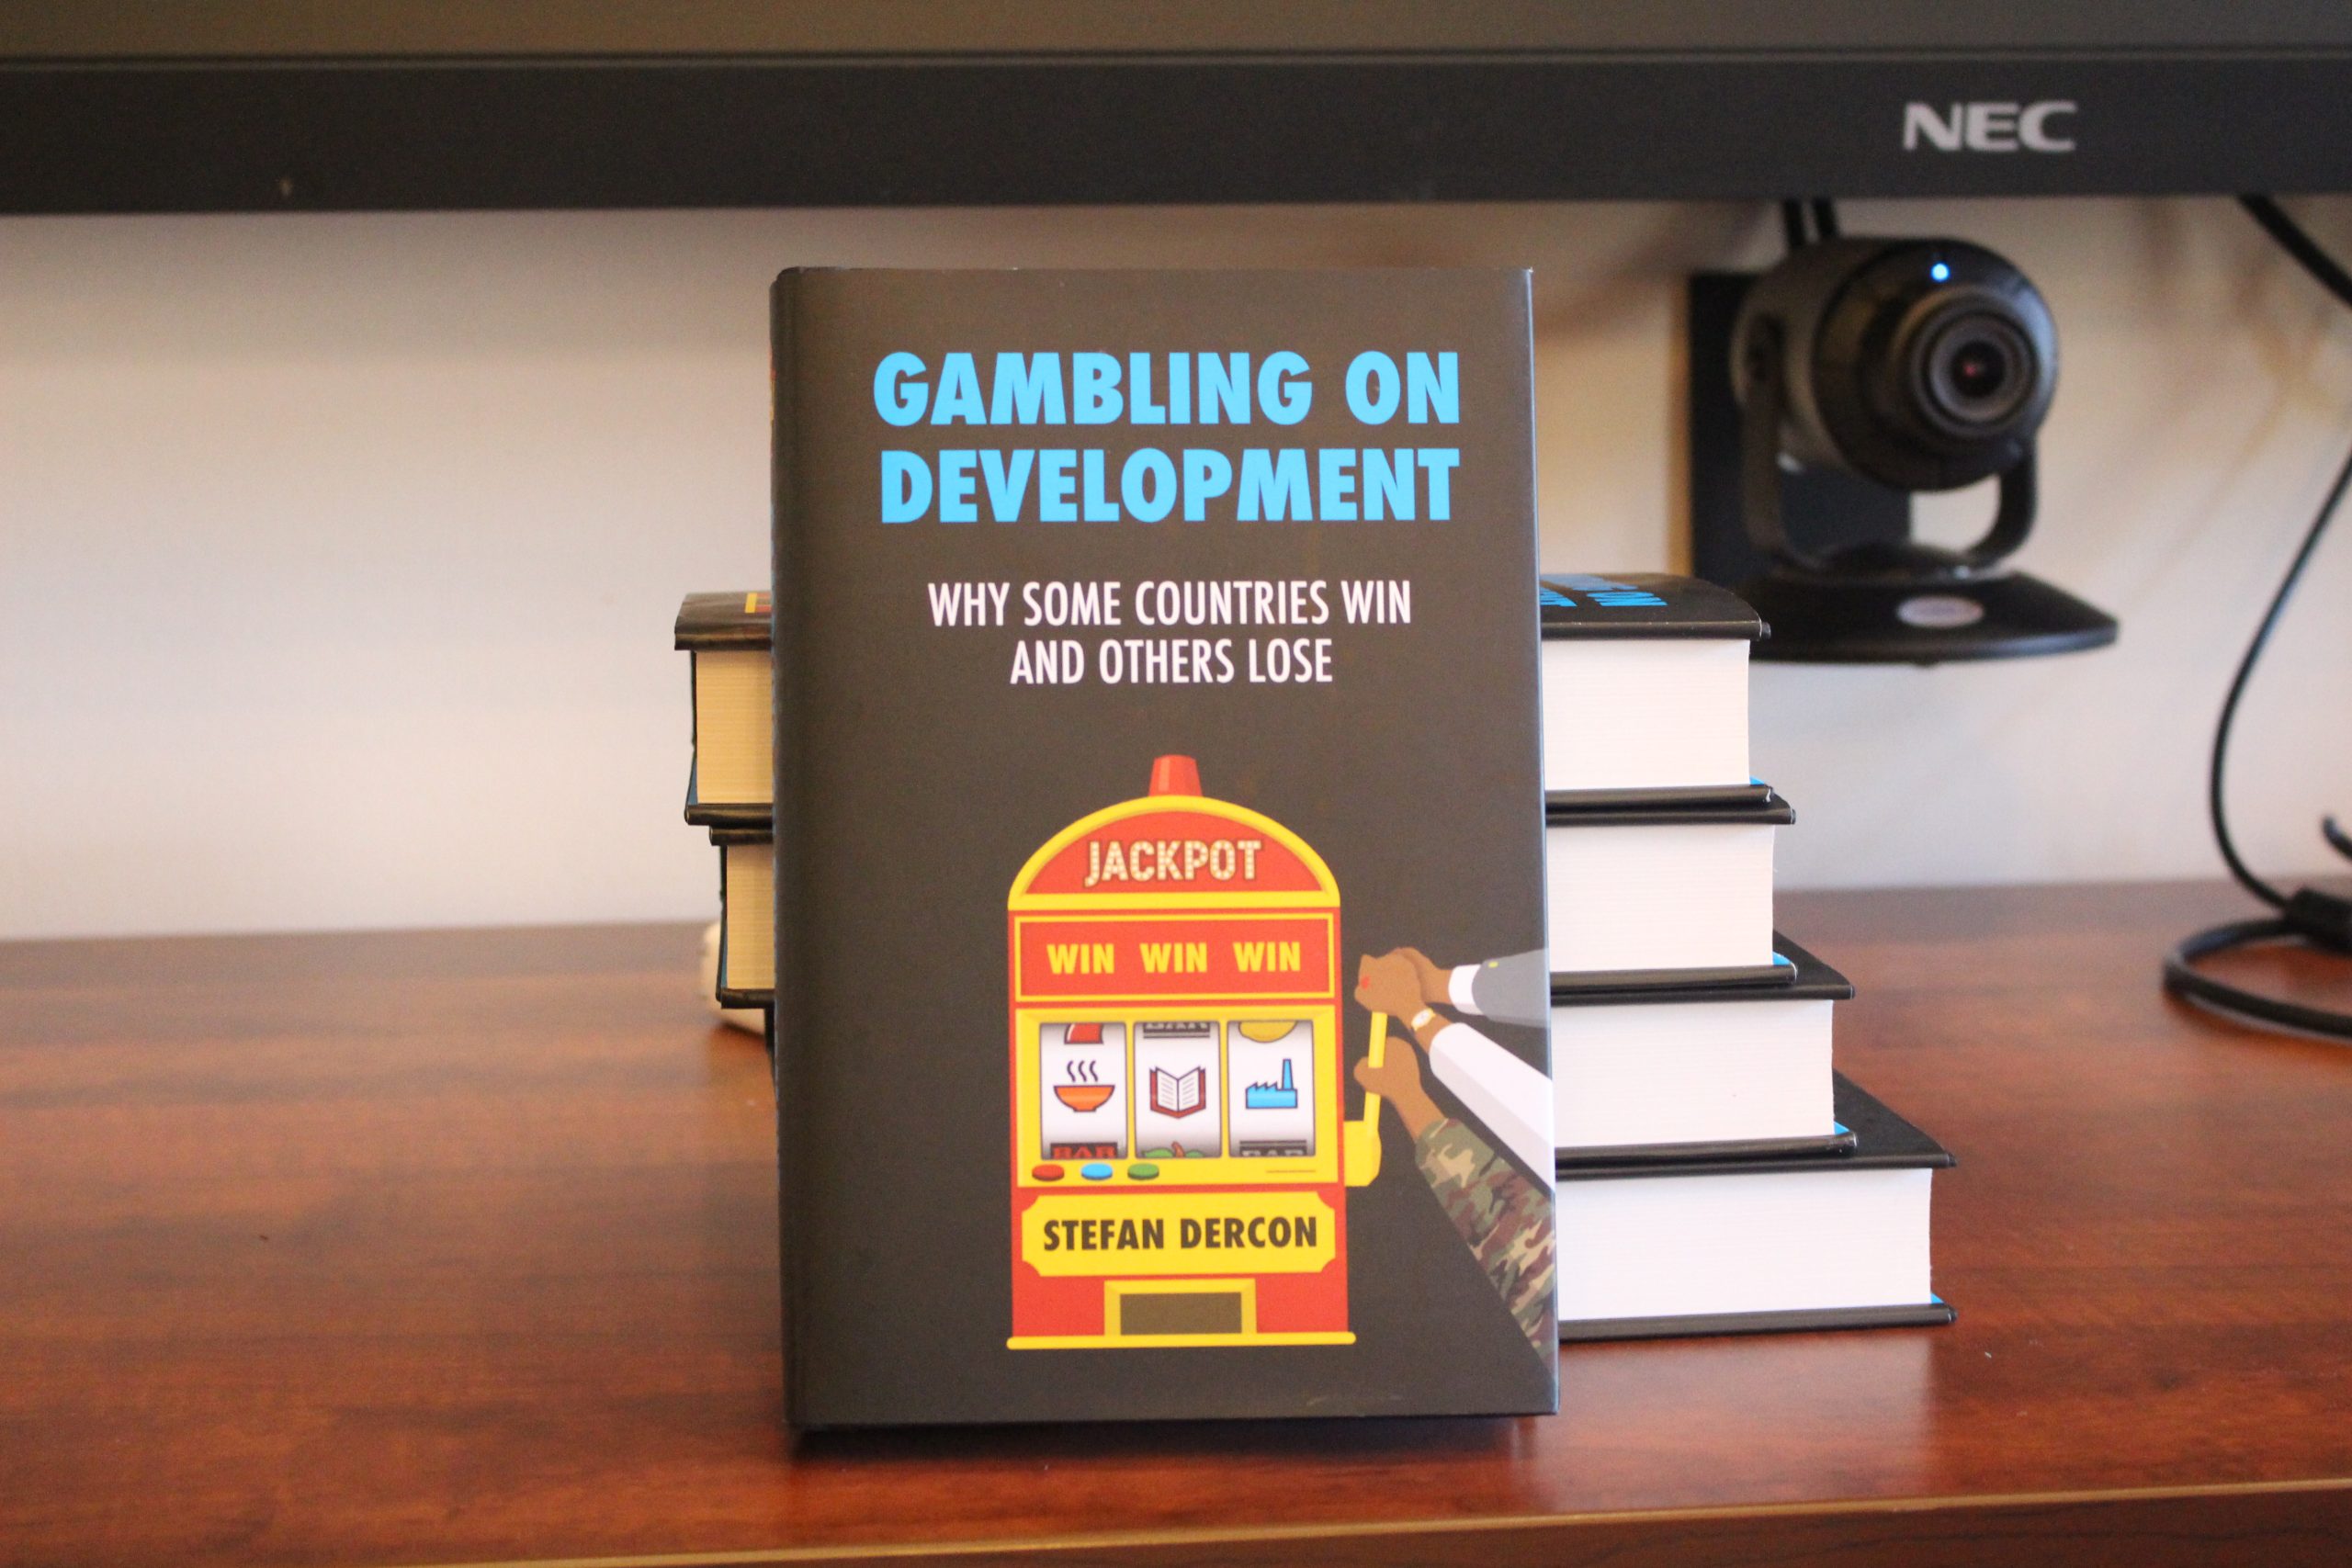 Stefan Dercon's book "Bet on development"